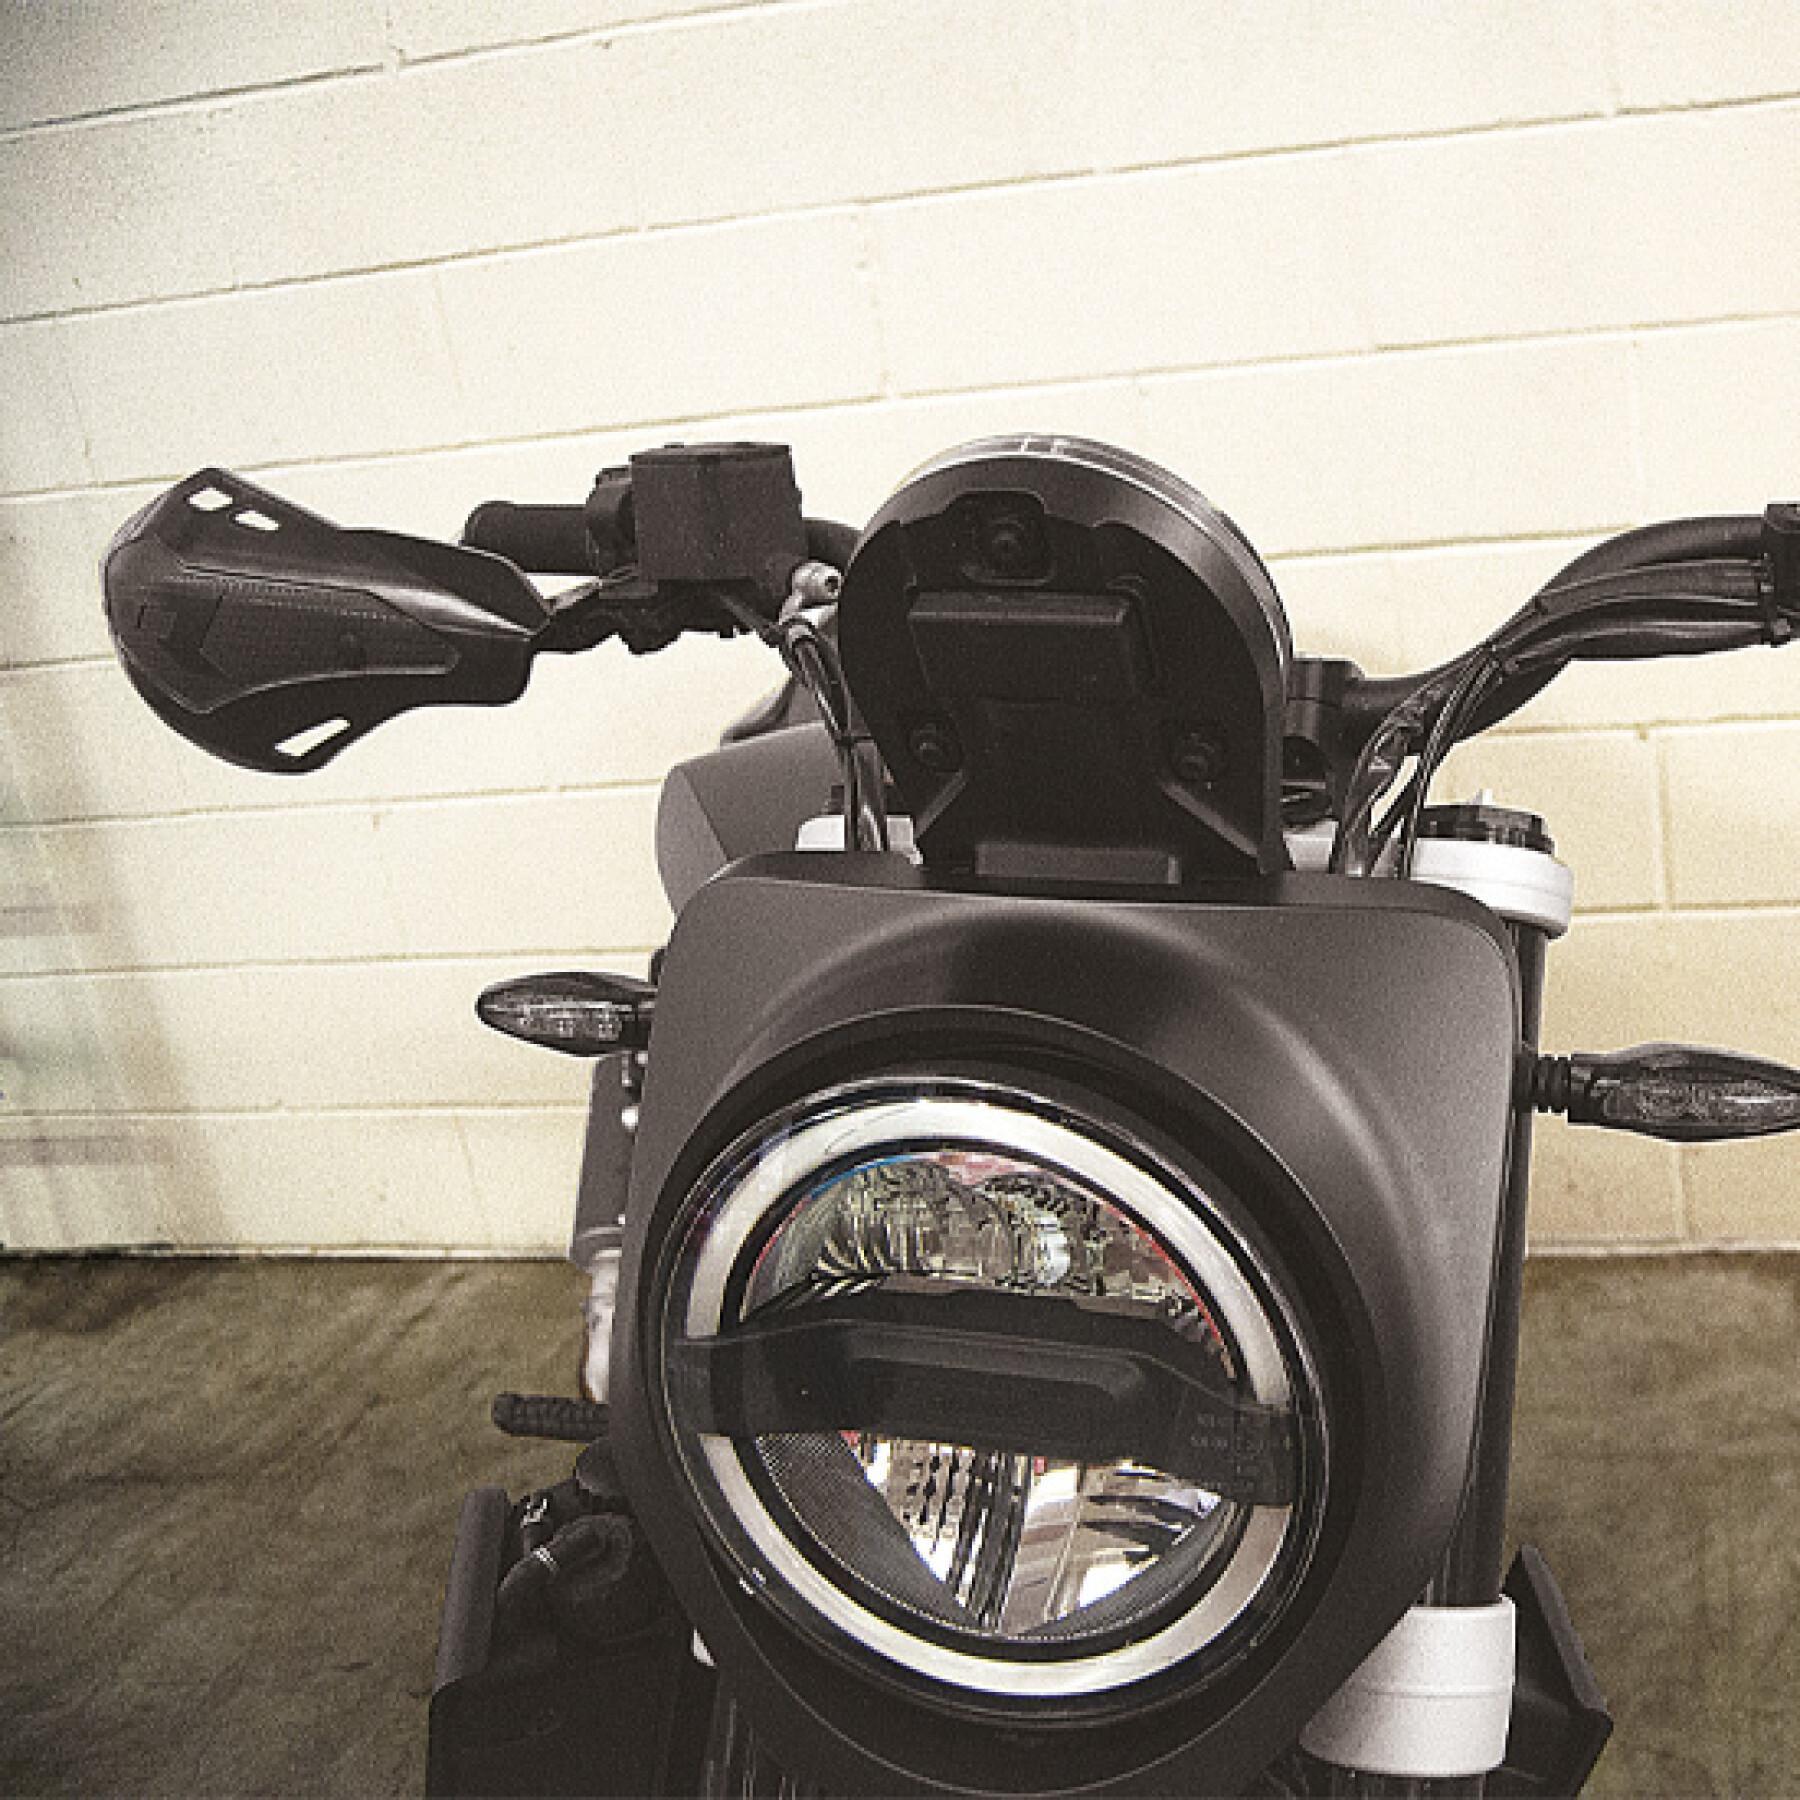 Protector de mão de motocicleta com kit de montagem R-Tech HP1 Ducati